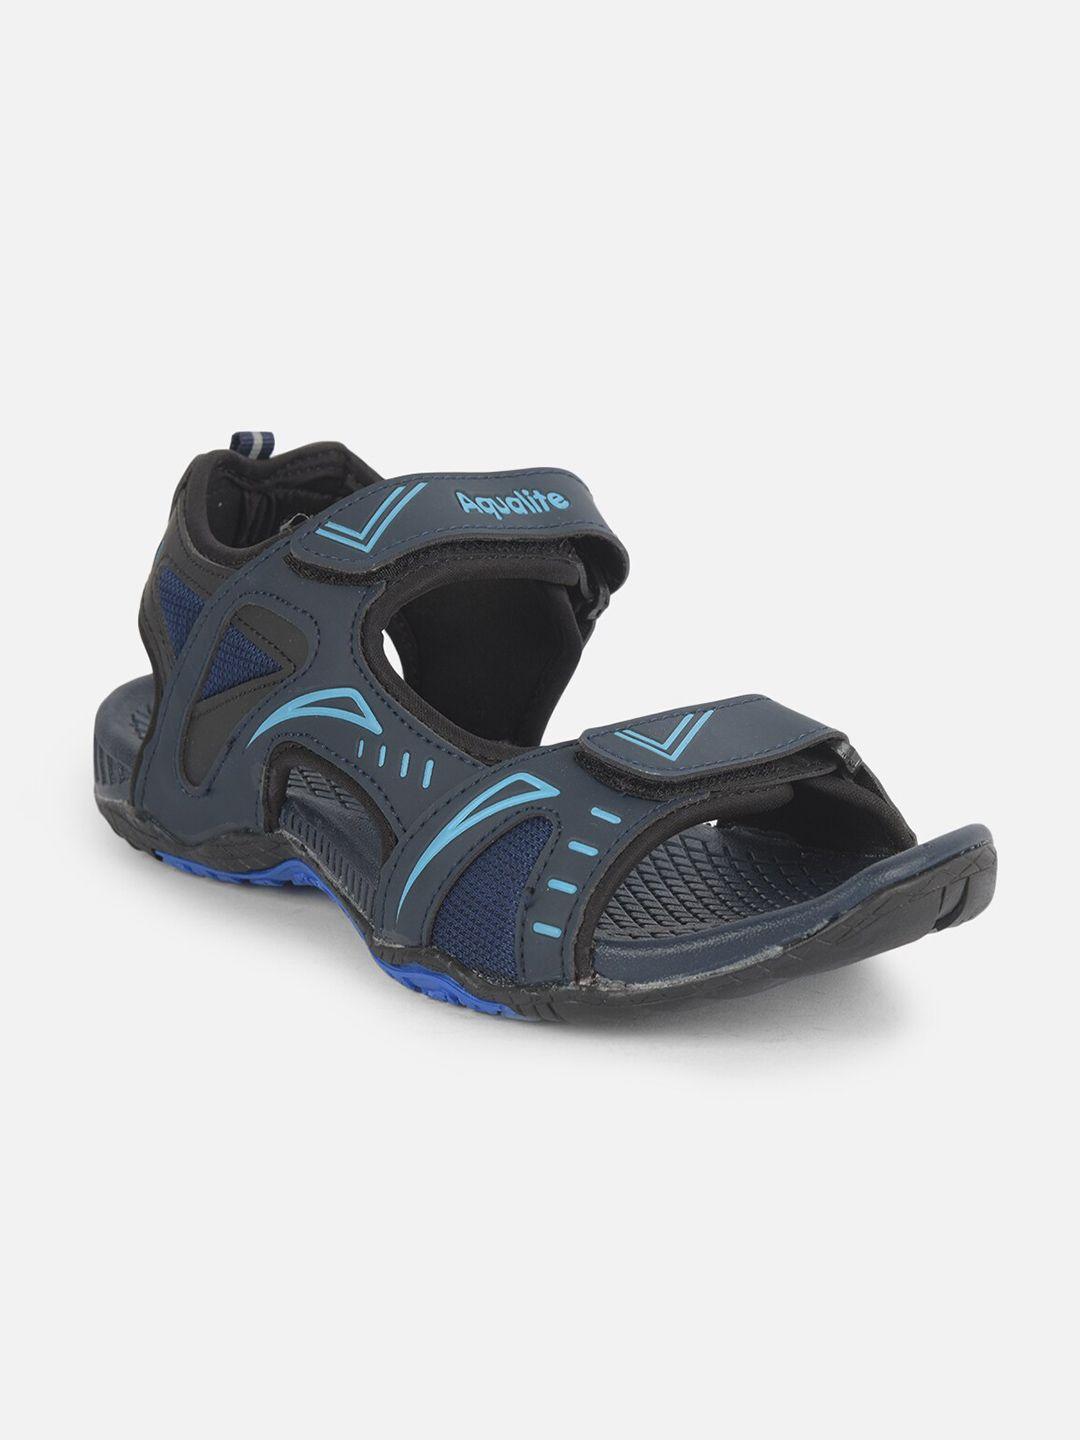 aqualite men navy blue comfort sandals